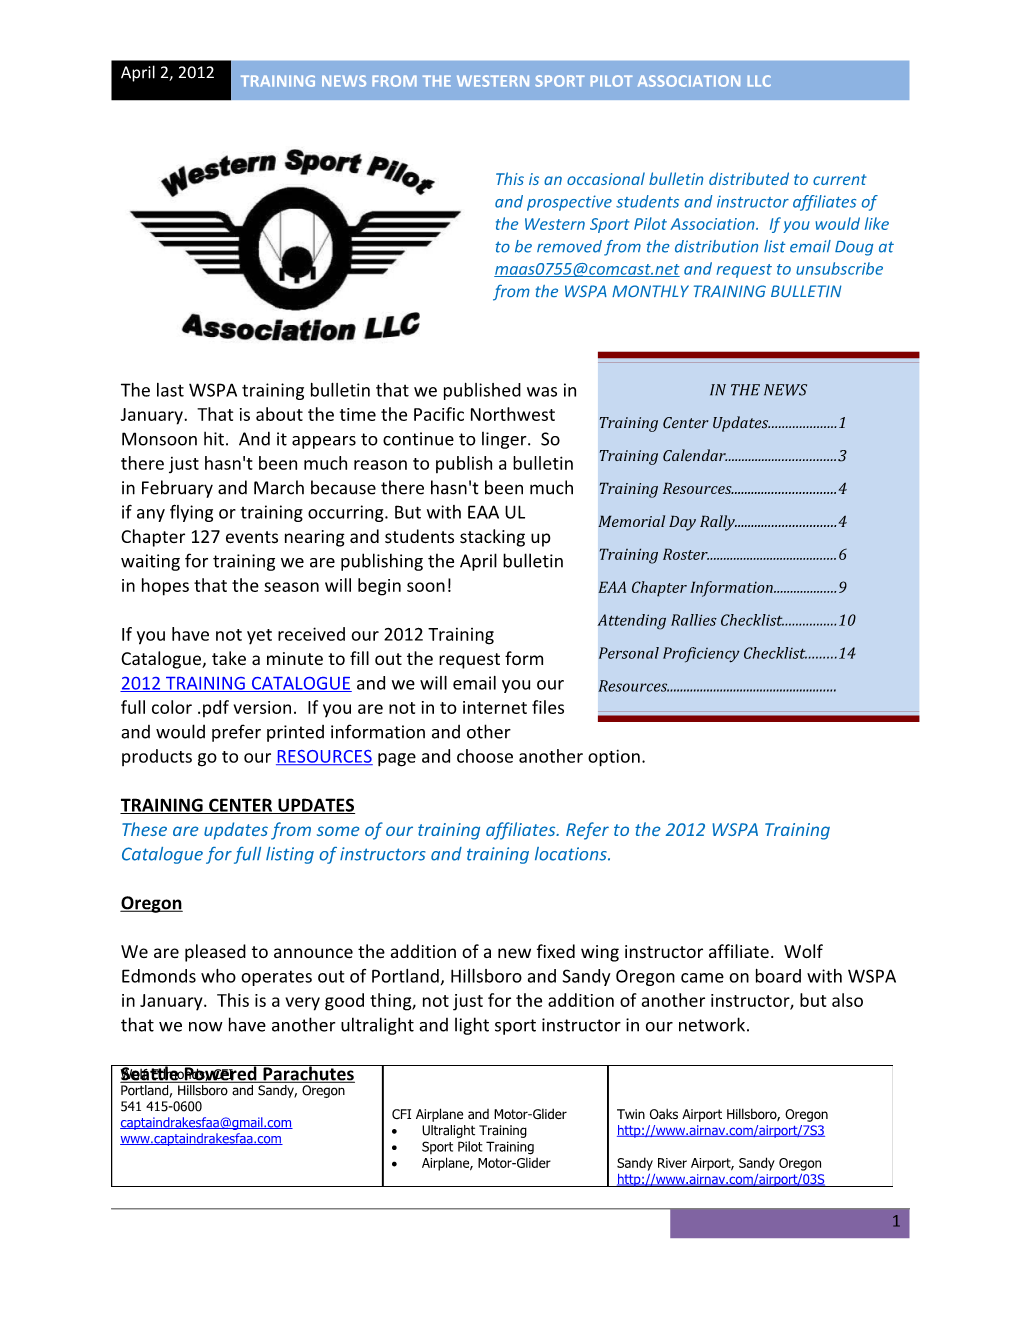 Training News from the Western Sport Pilot Association Llc